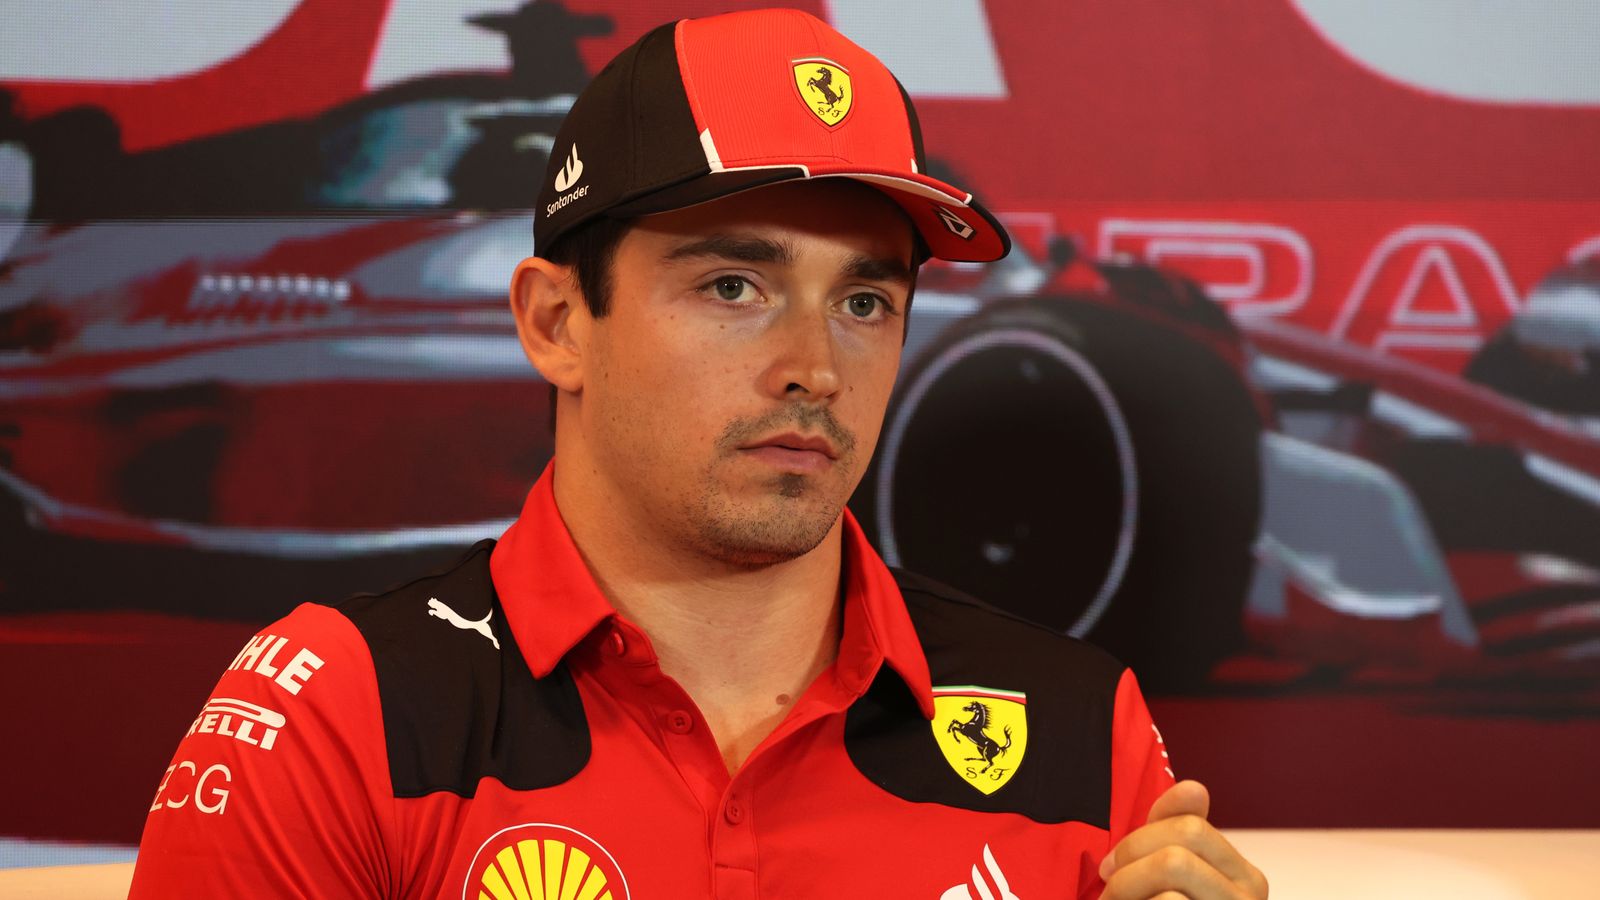 GP de Canadá: Charles Leclerc dice que es ‘preocupante’ que Ferrari no sepa las razones por las que se siente ‘realmente mal’ en el auto